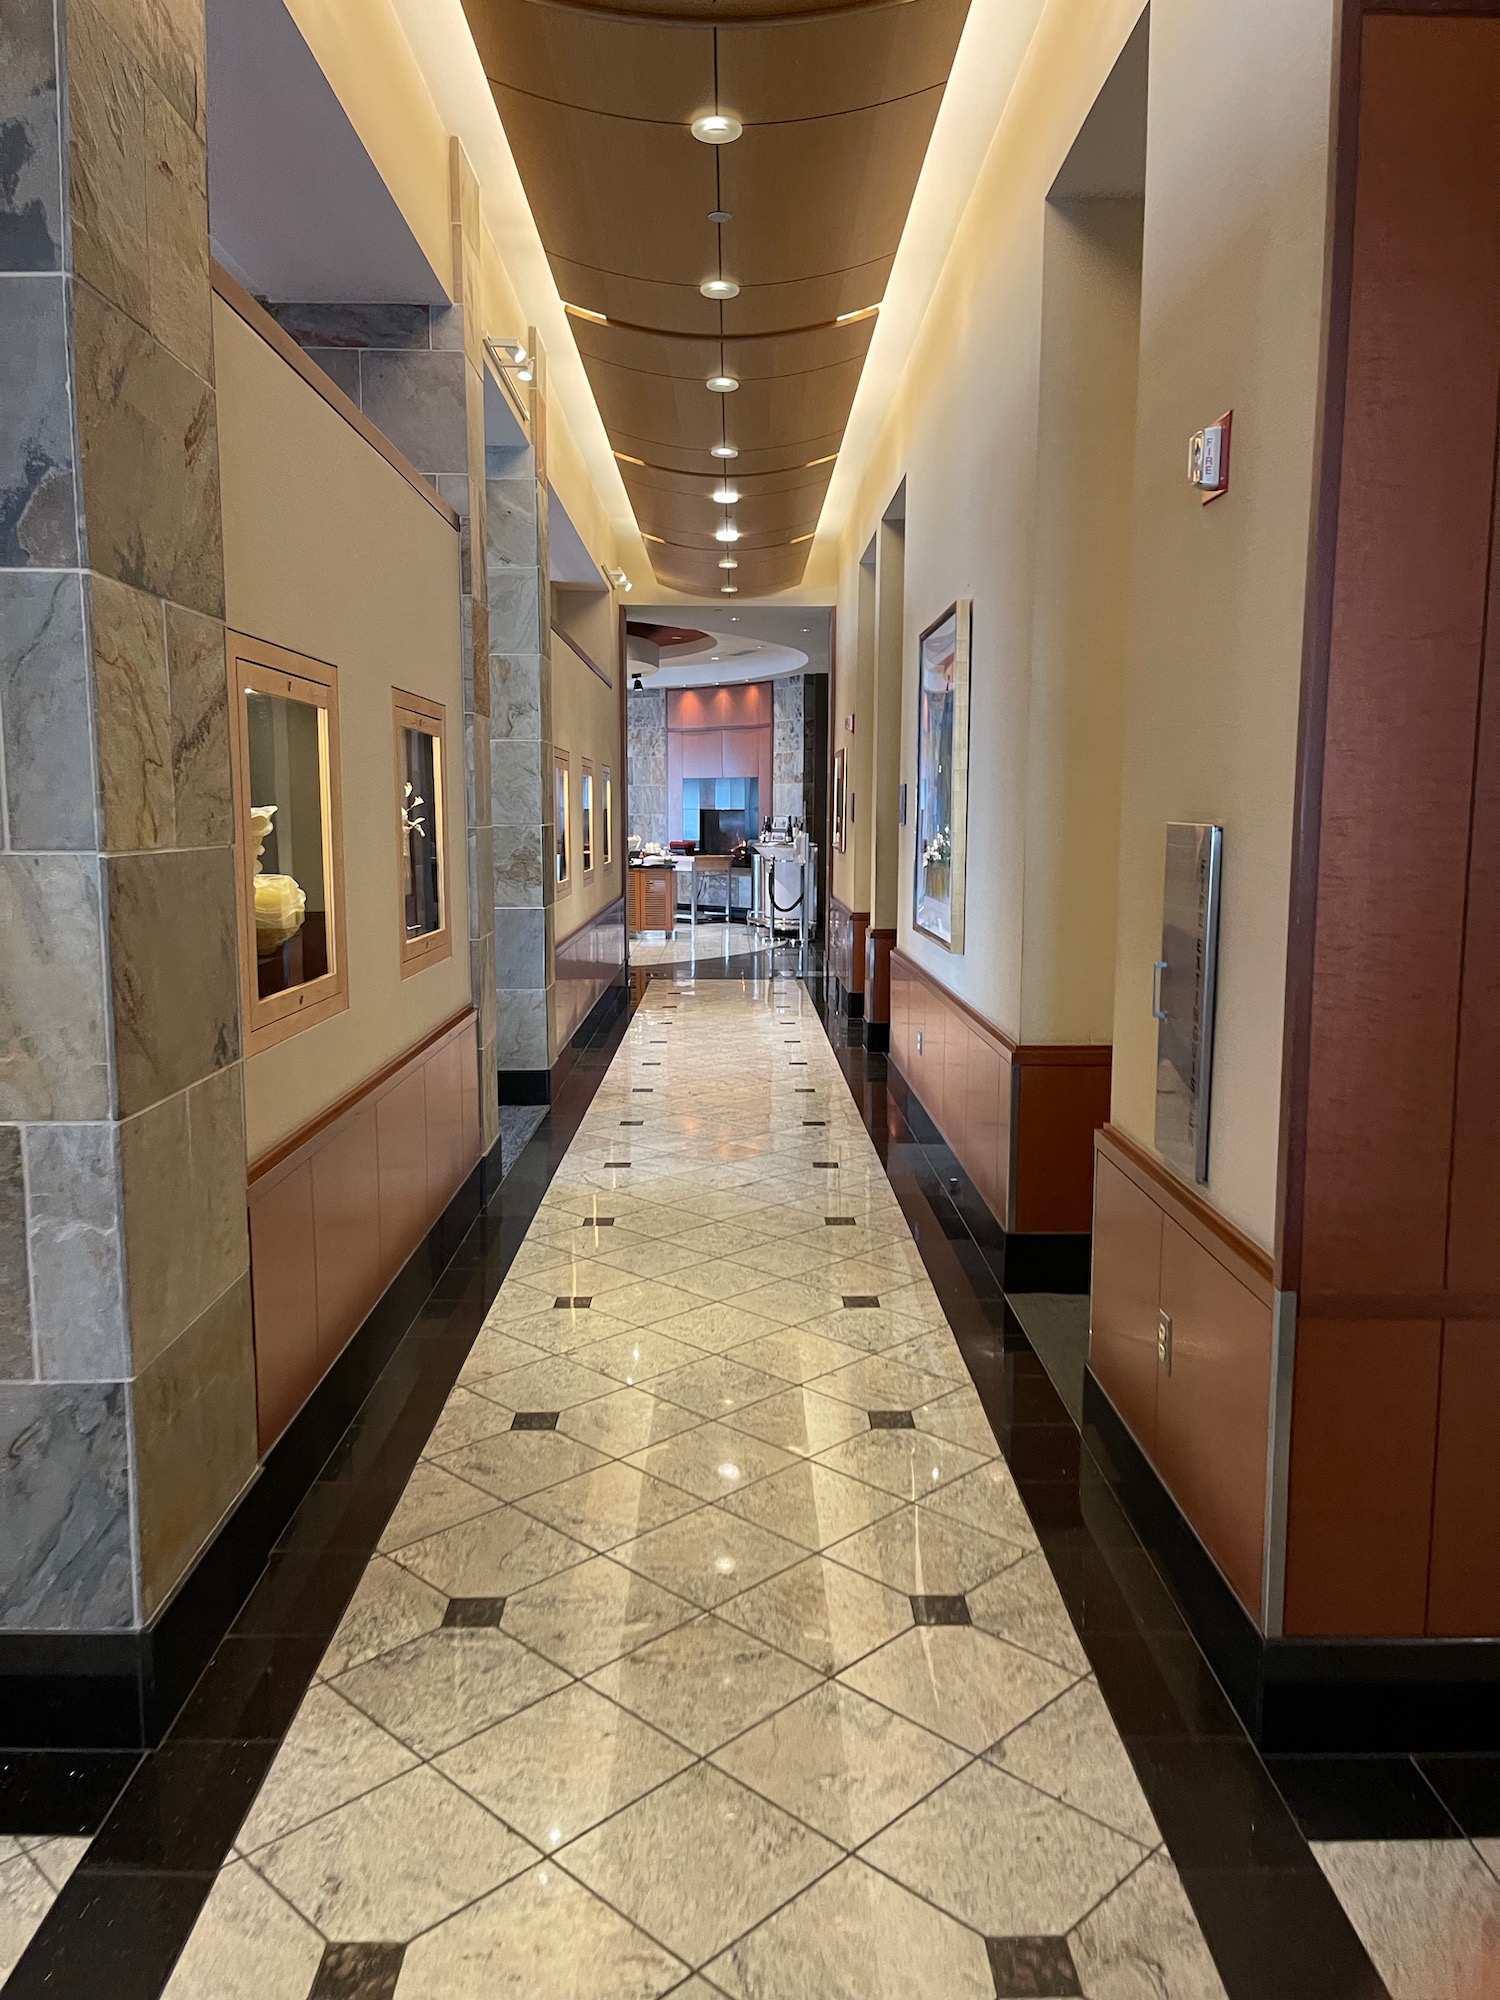 a hallway with a tile floor and a tile floor